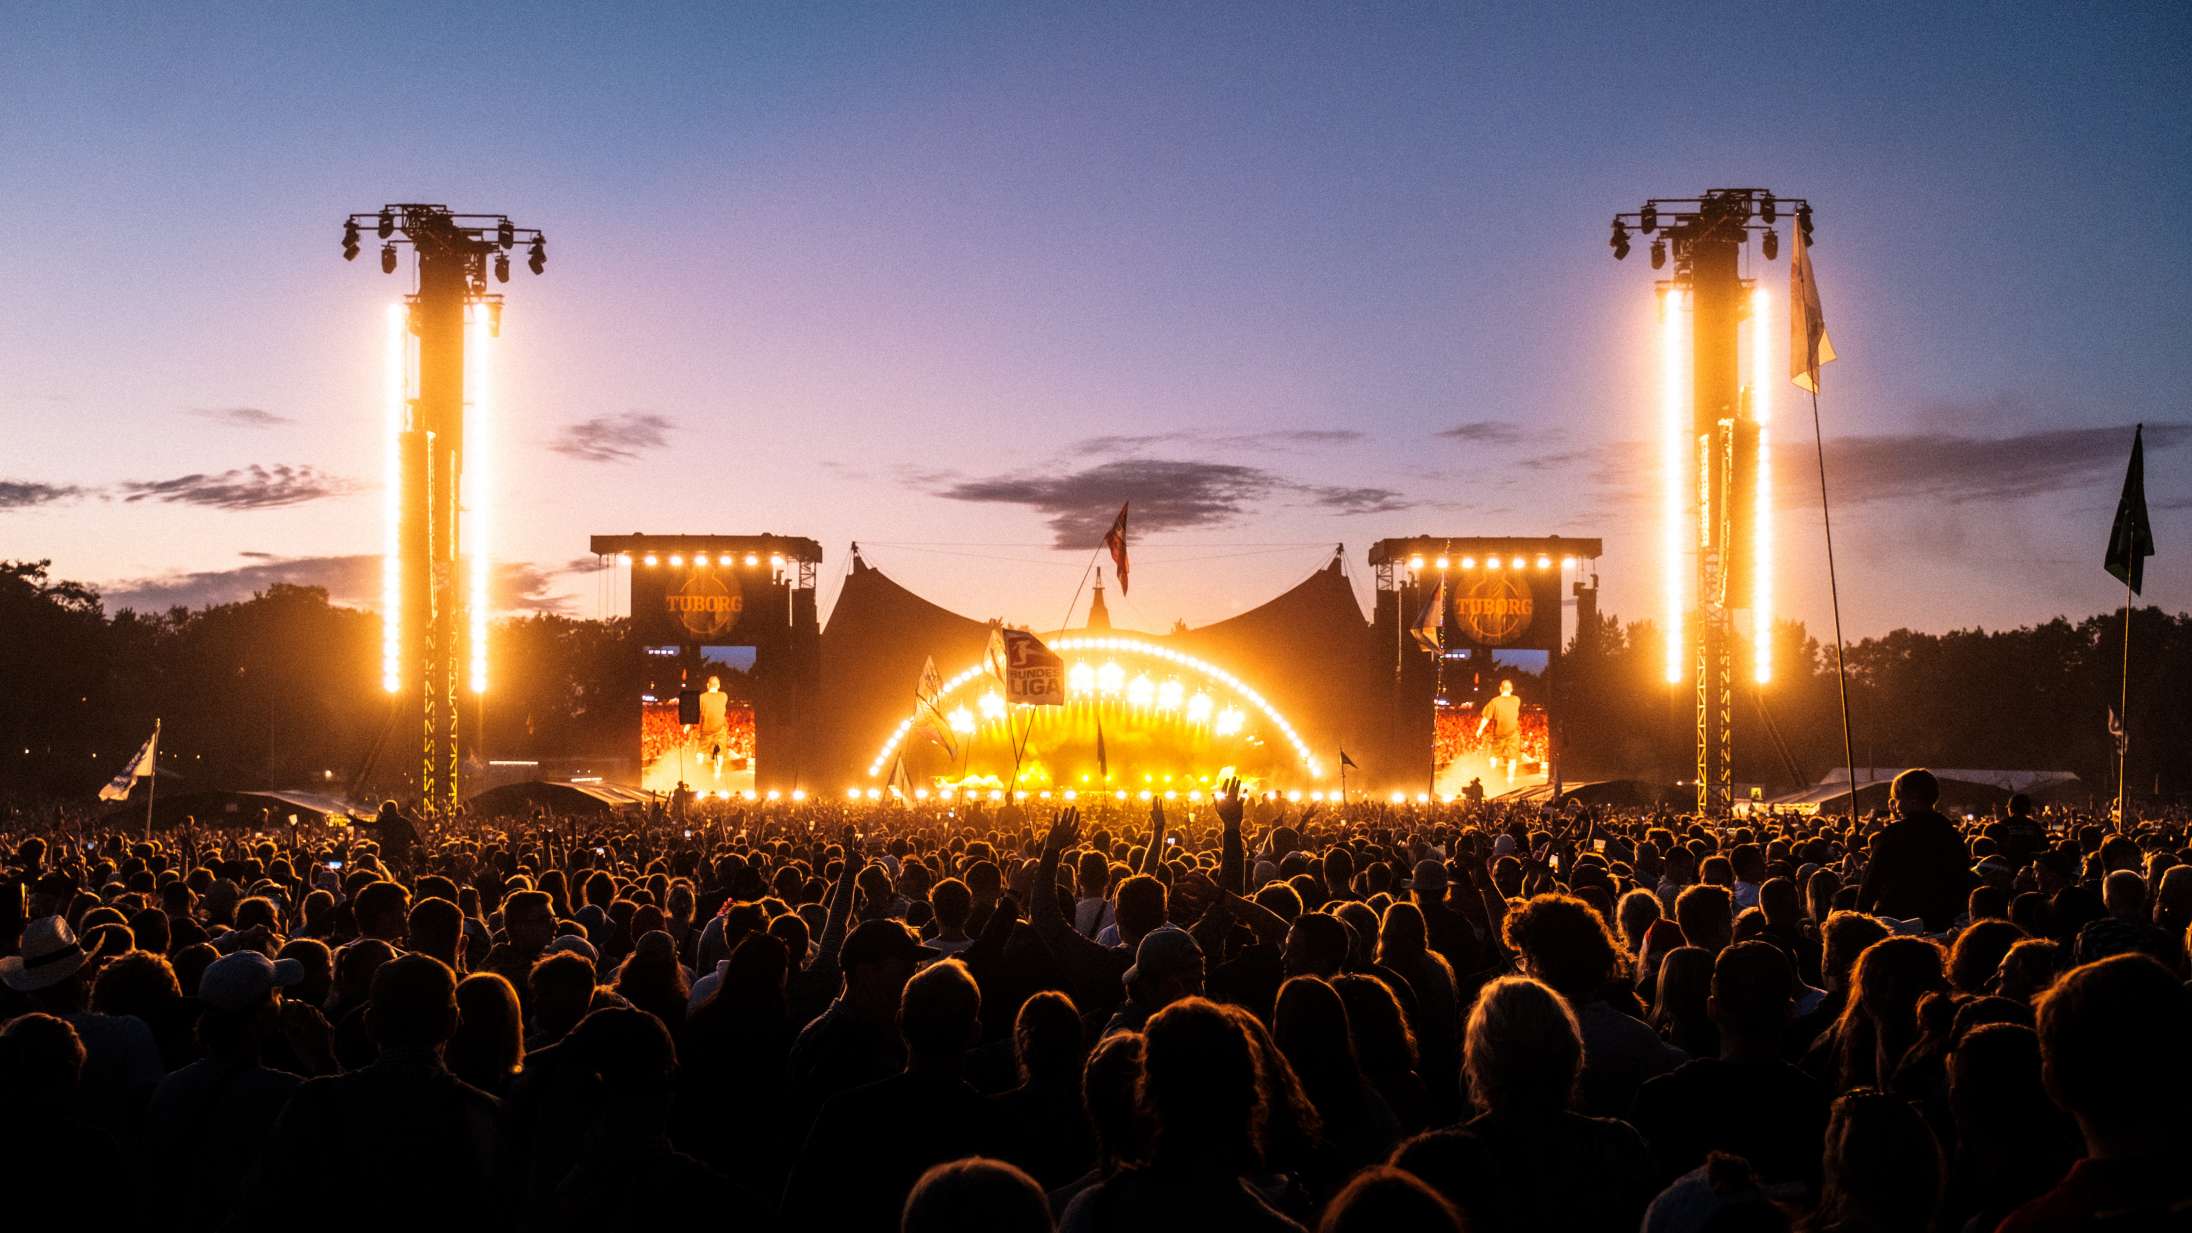 Vores Roskilde Festival-ekspert vurderer: Hvor stærk er årets plakat i forhold til tidligere år?